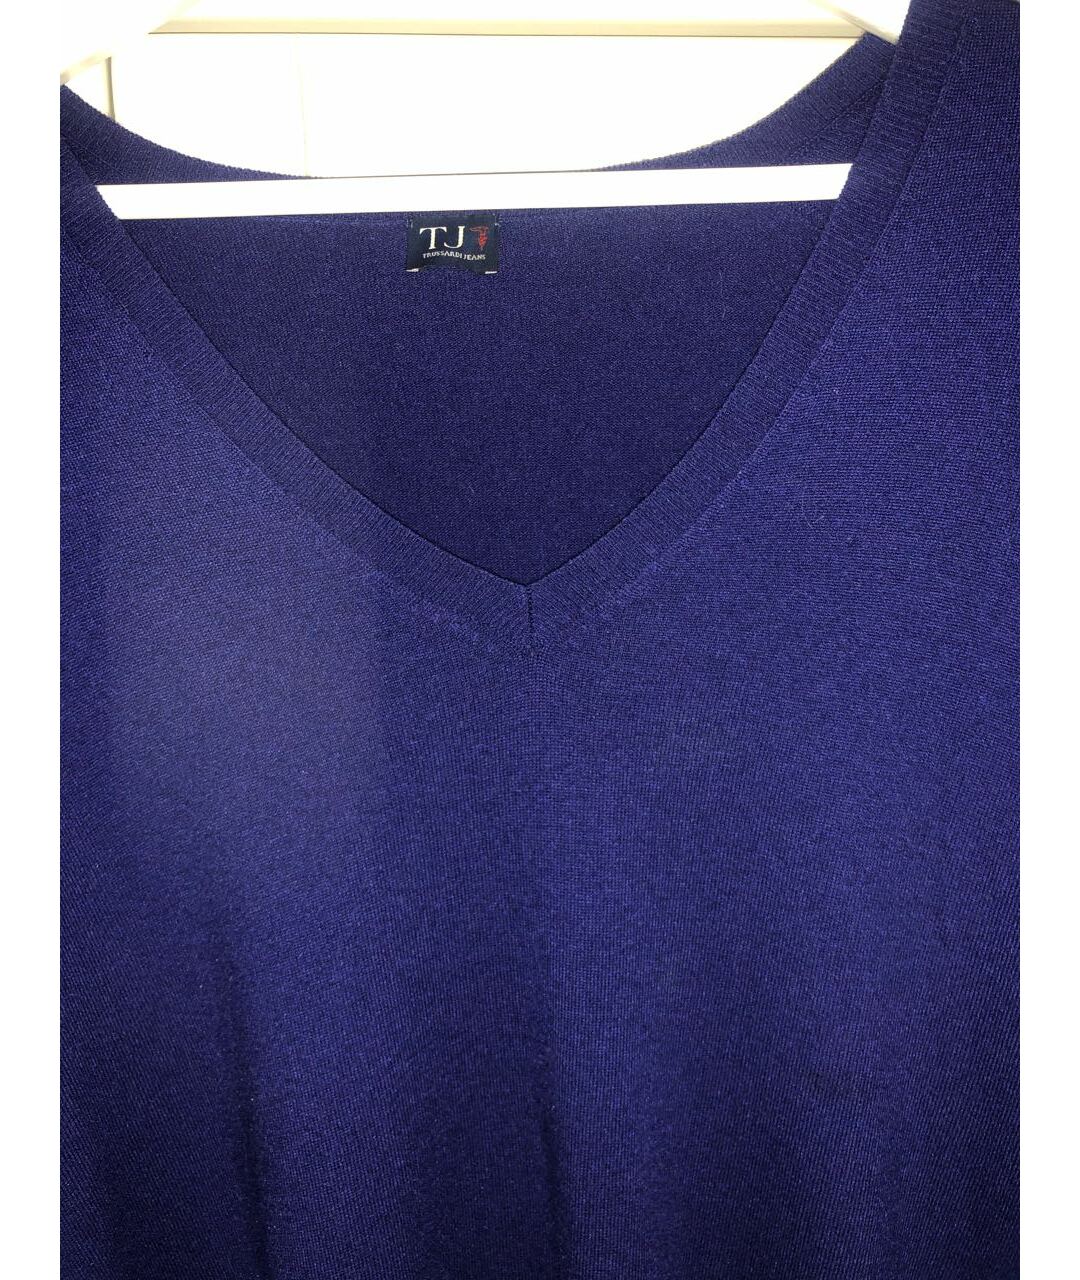 TRUSSARDI JEANS Фиолетовый кашемировый джемпер / свитер, фото 3